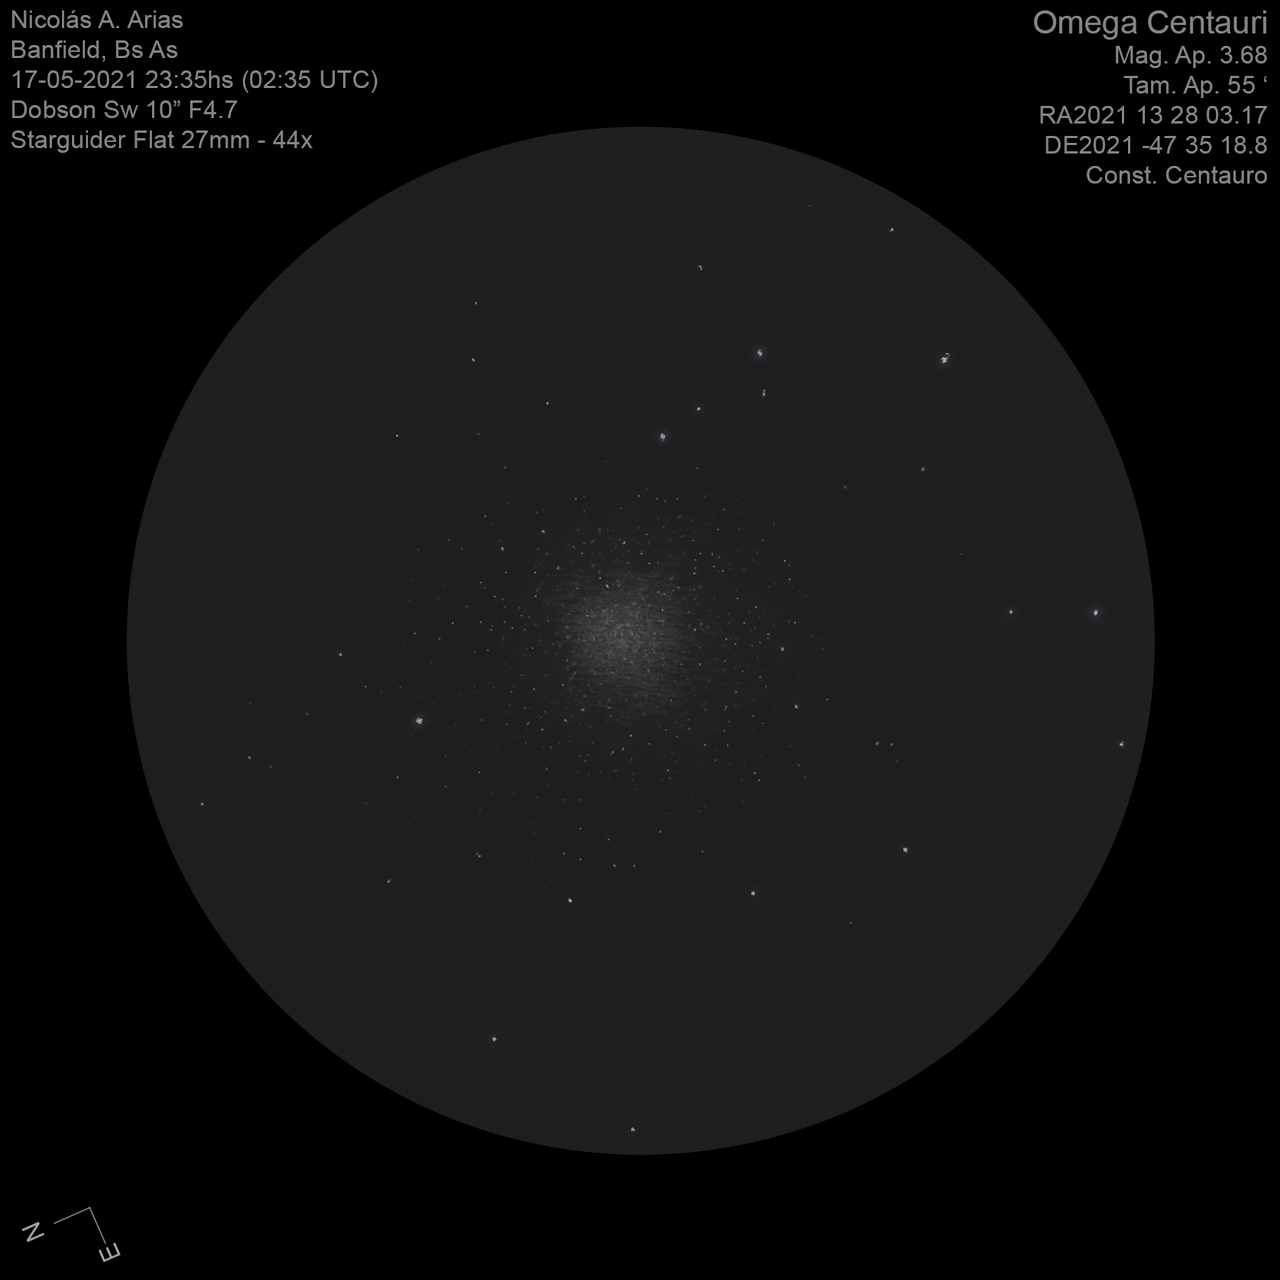 Omega-Centauri-17-5-2021-44x.jpg.c546ed875915a8f0a0bdde56d3d1f34b.jpg